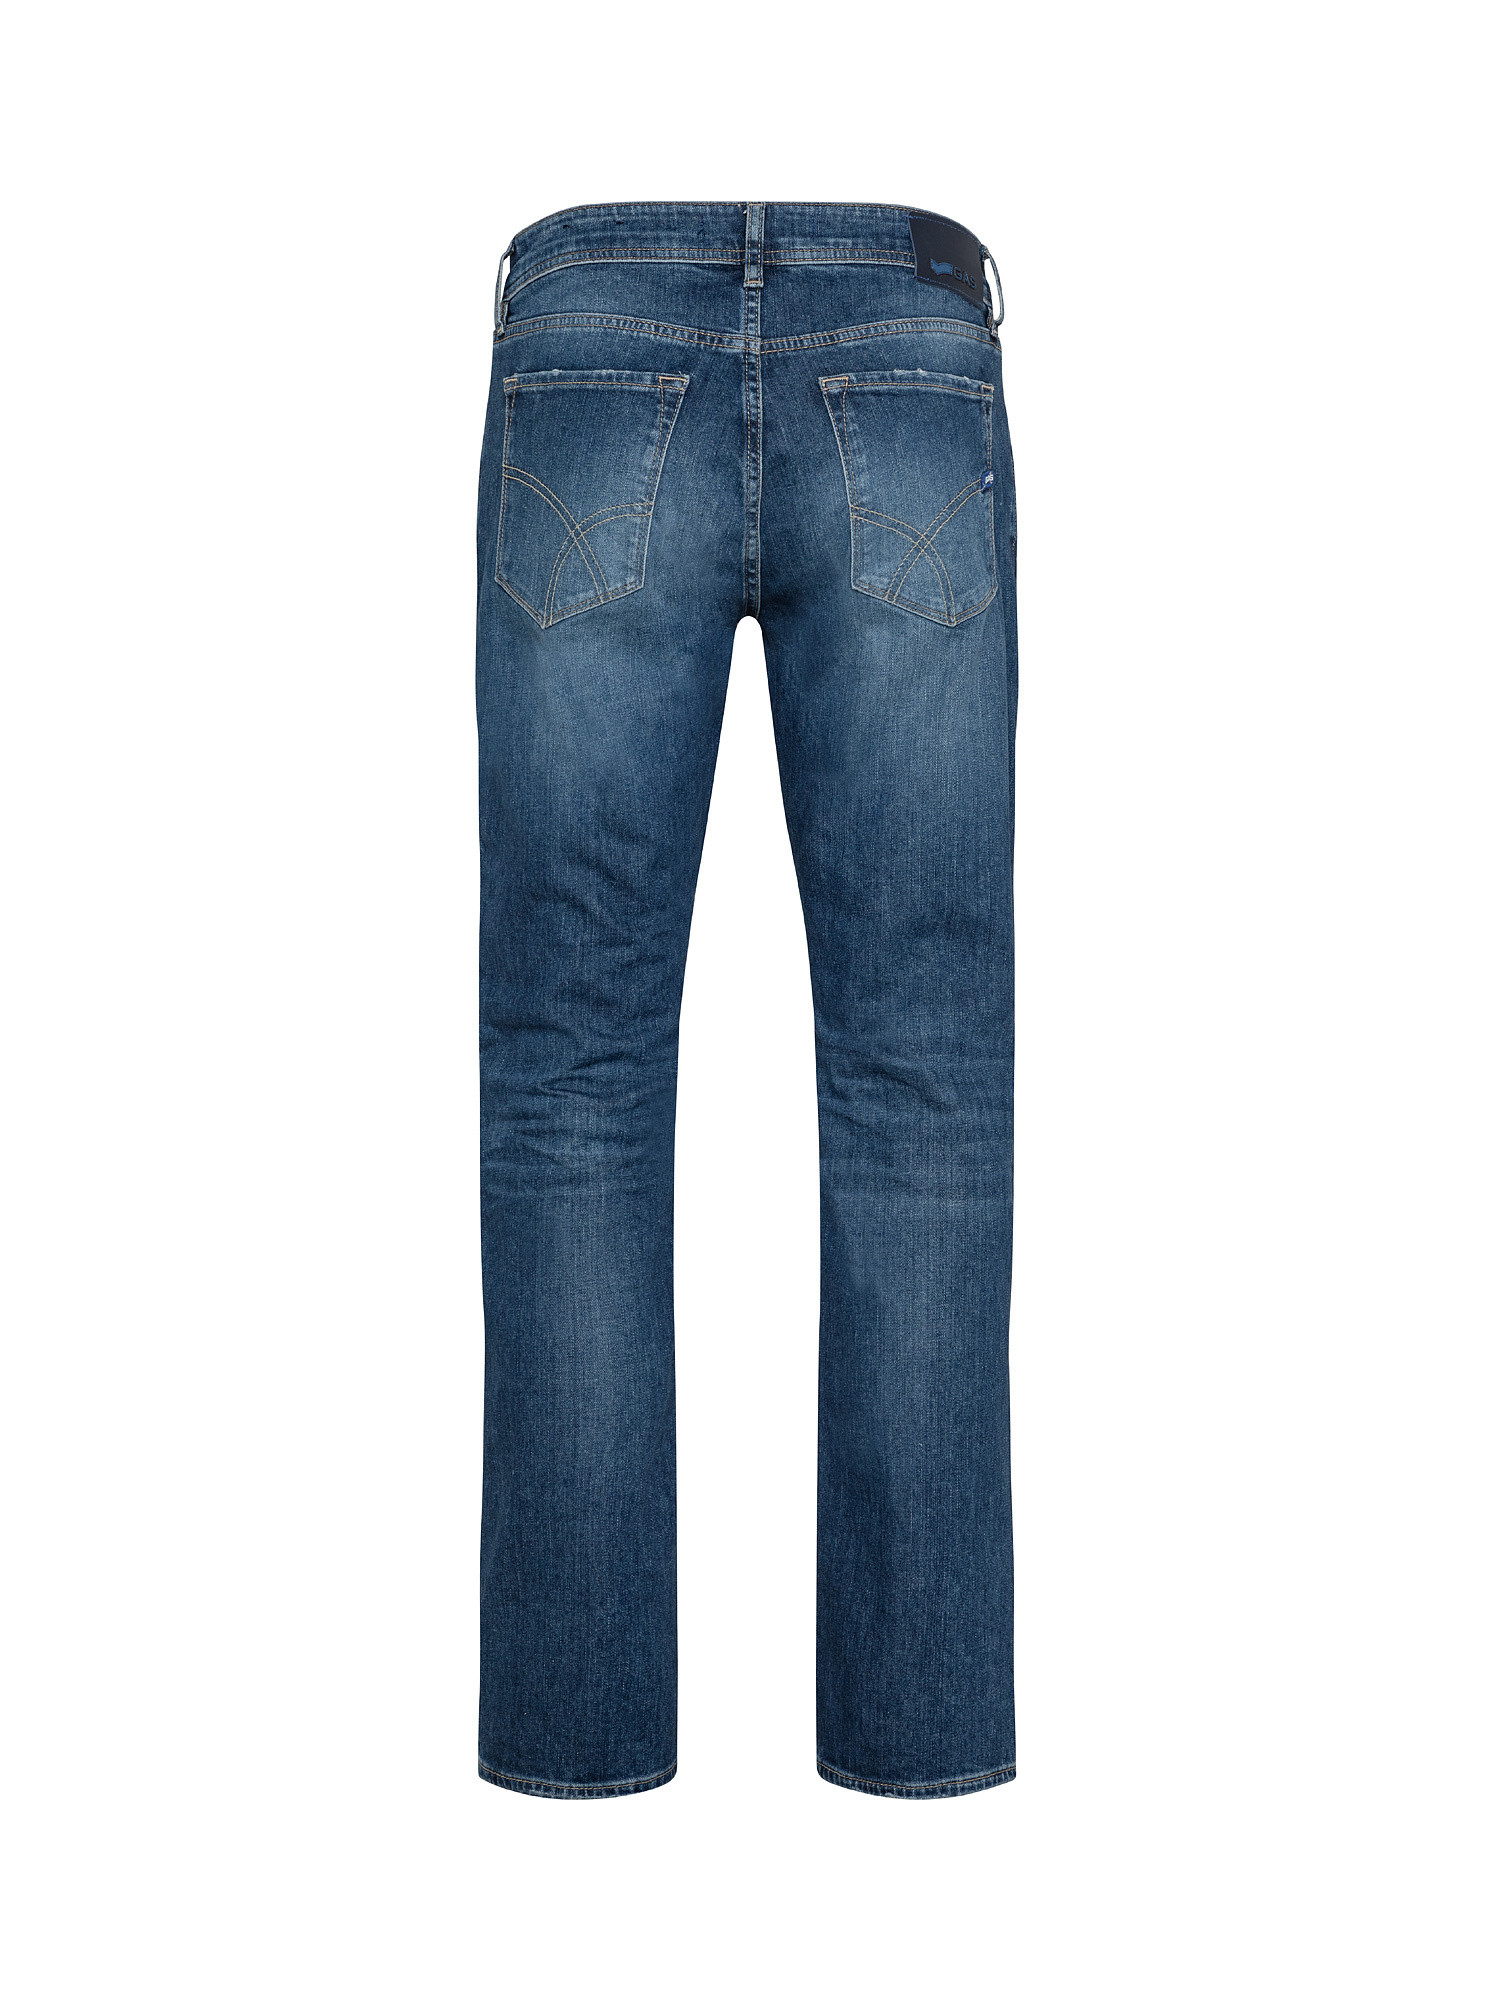 Jeans slim elasticizzati, Denim, large